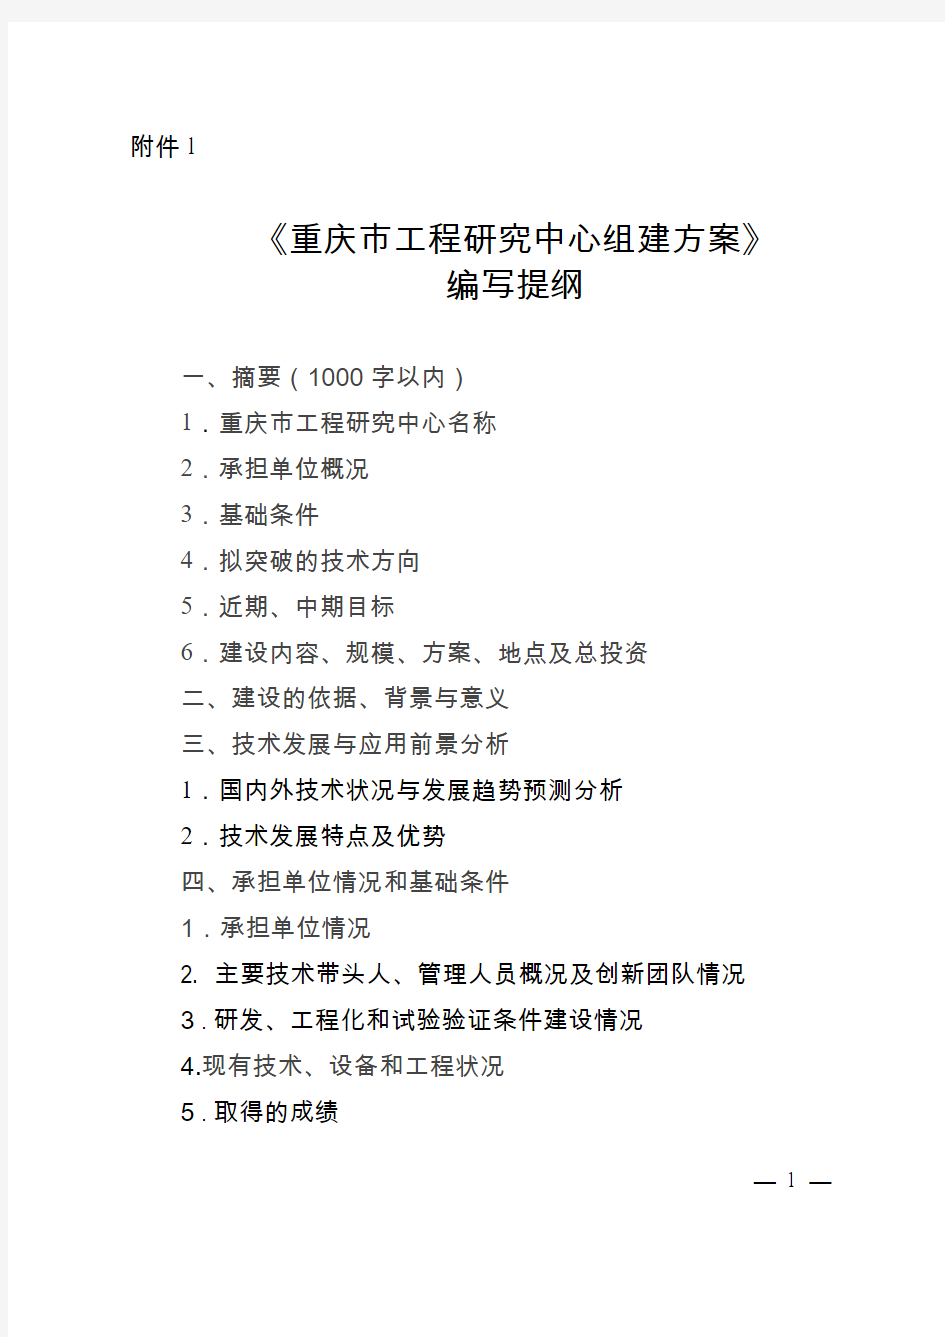 《重庆市工程研究中心组建方案》编写提纲